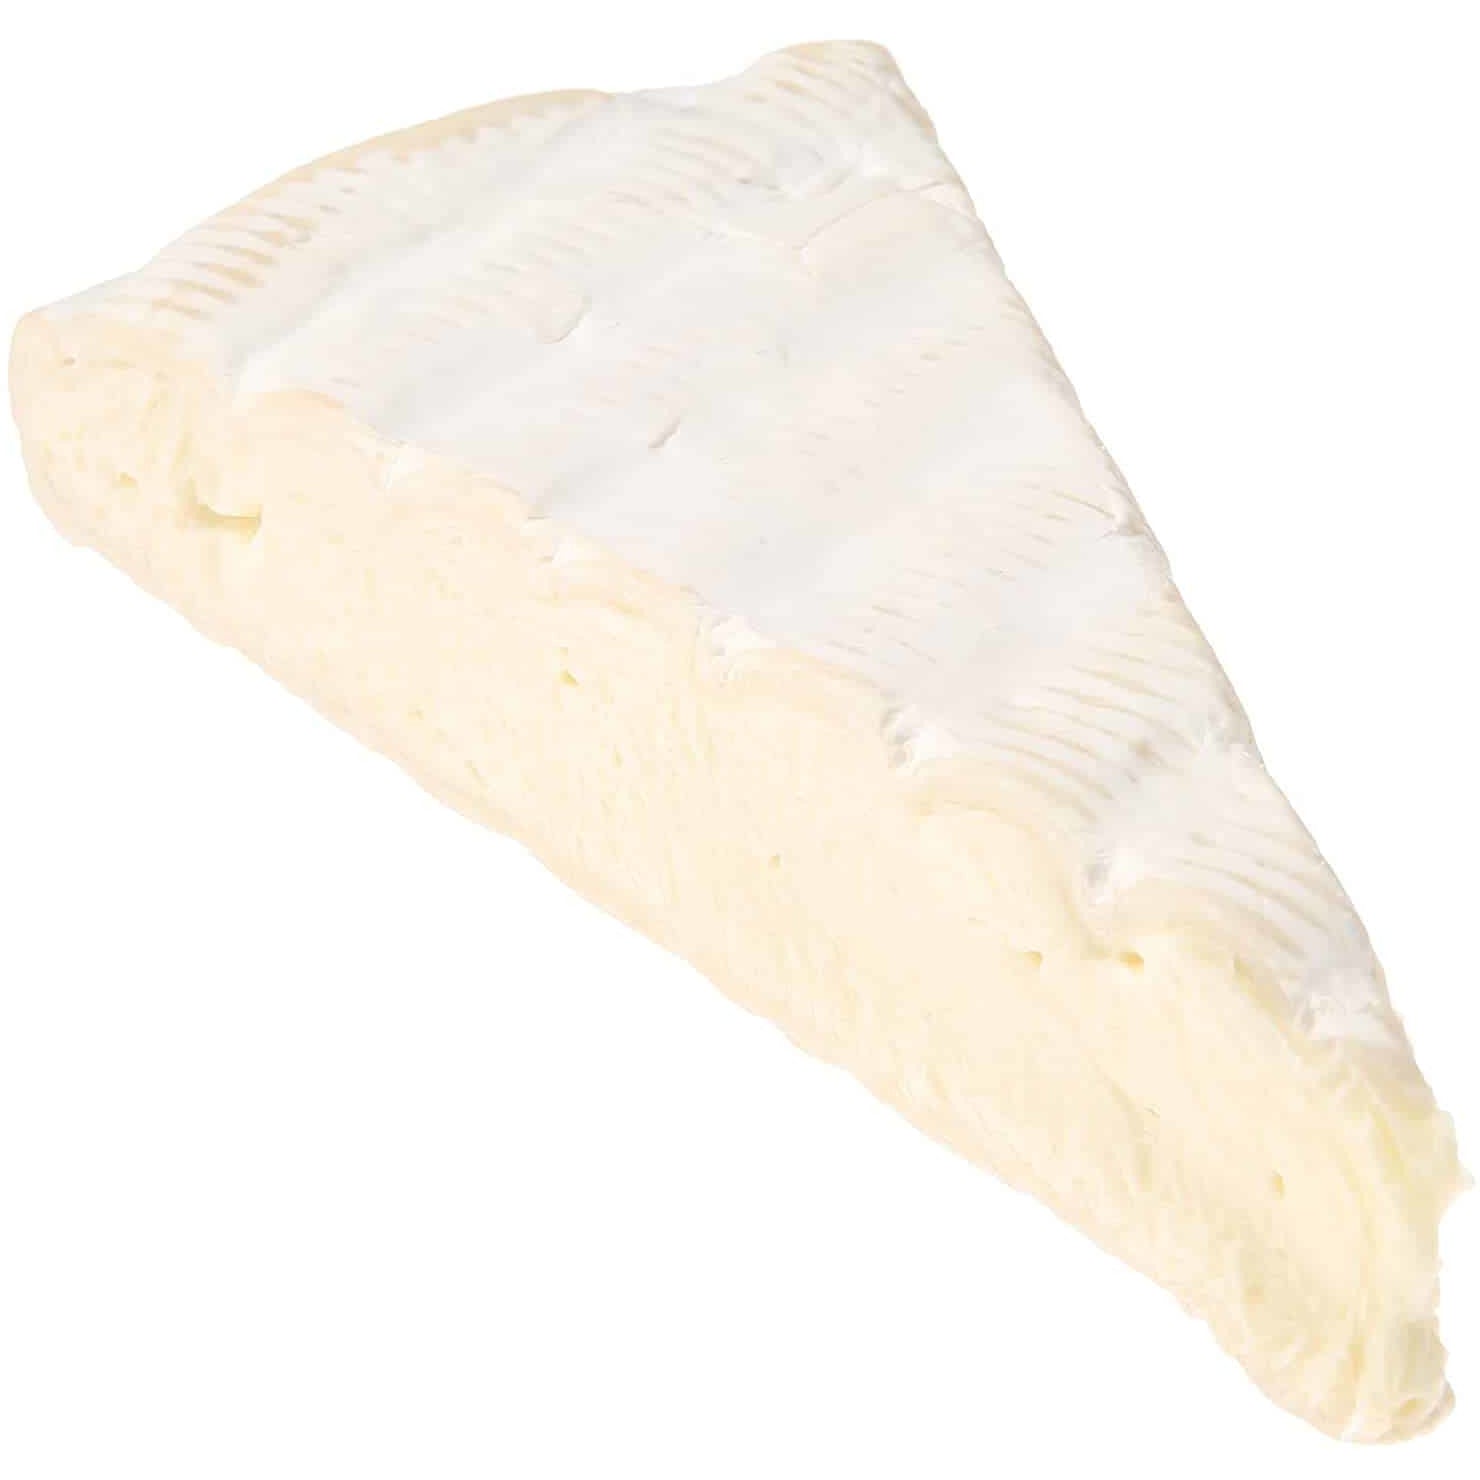 Lactalis, Brie De Paris Per pound